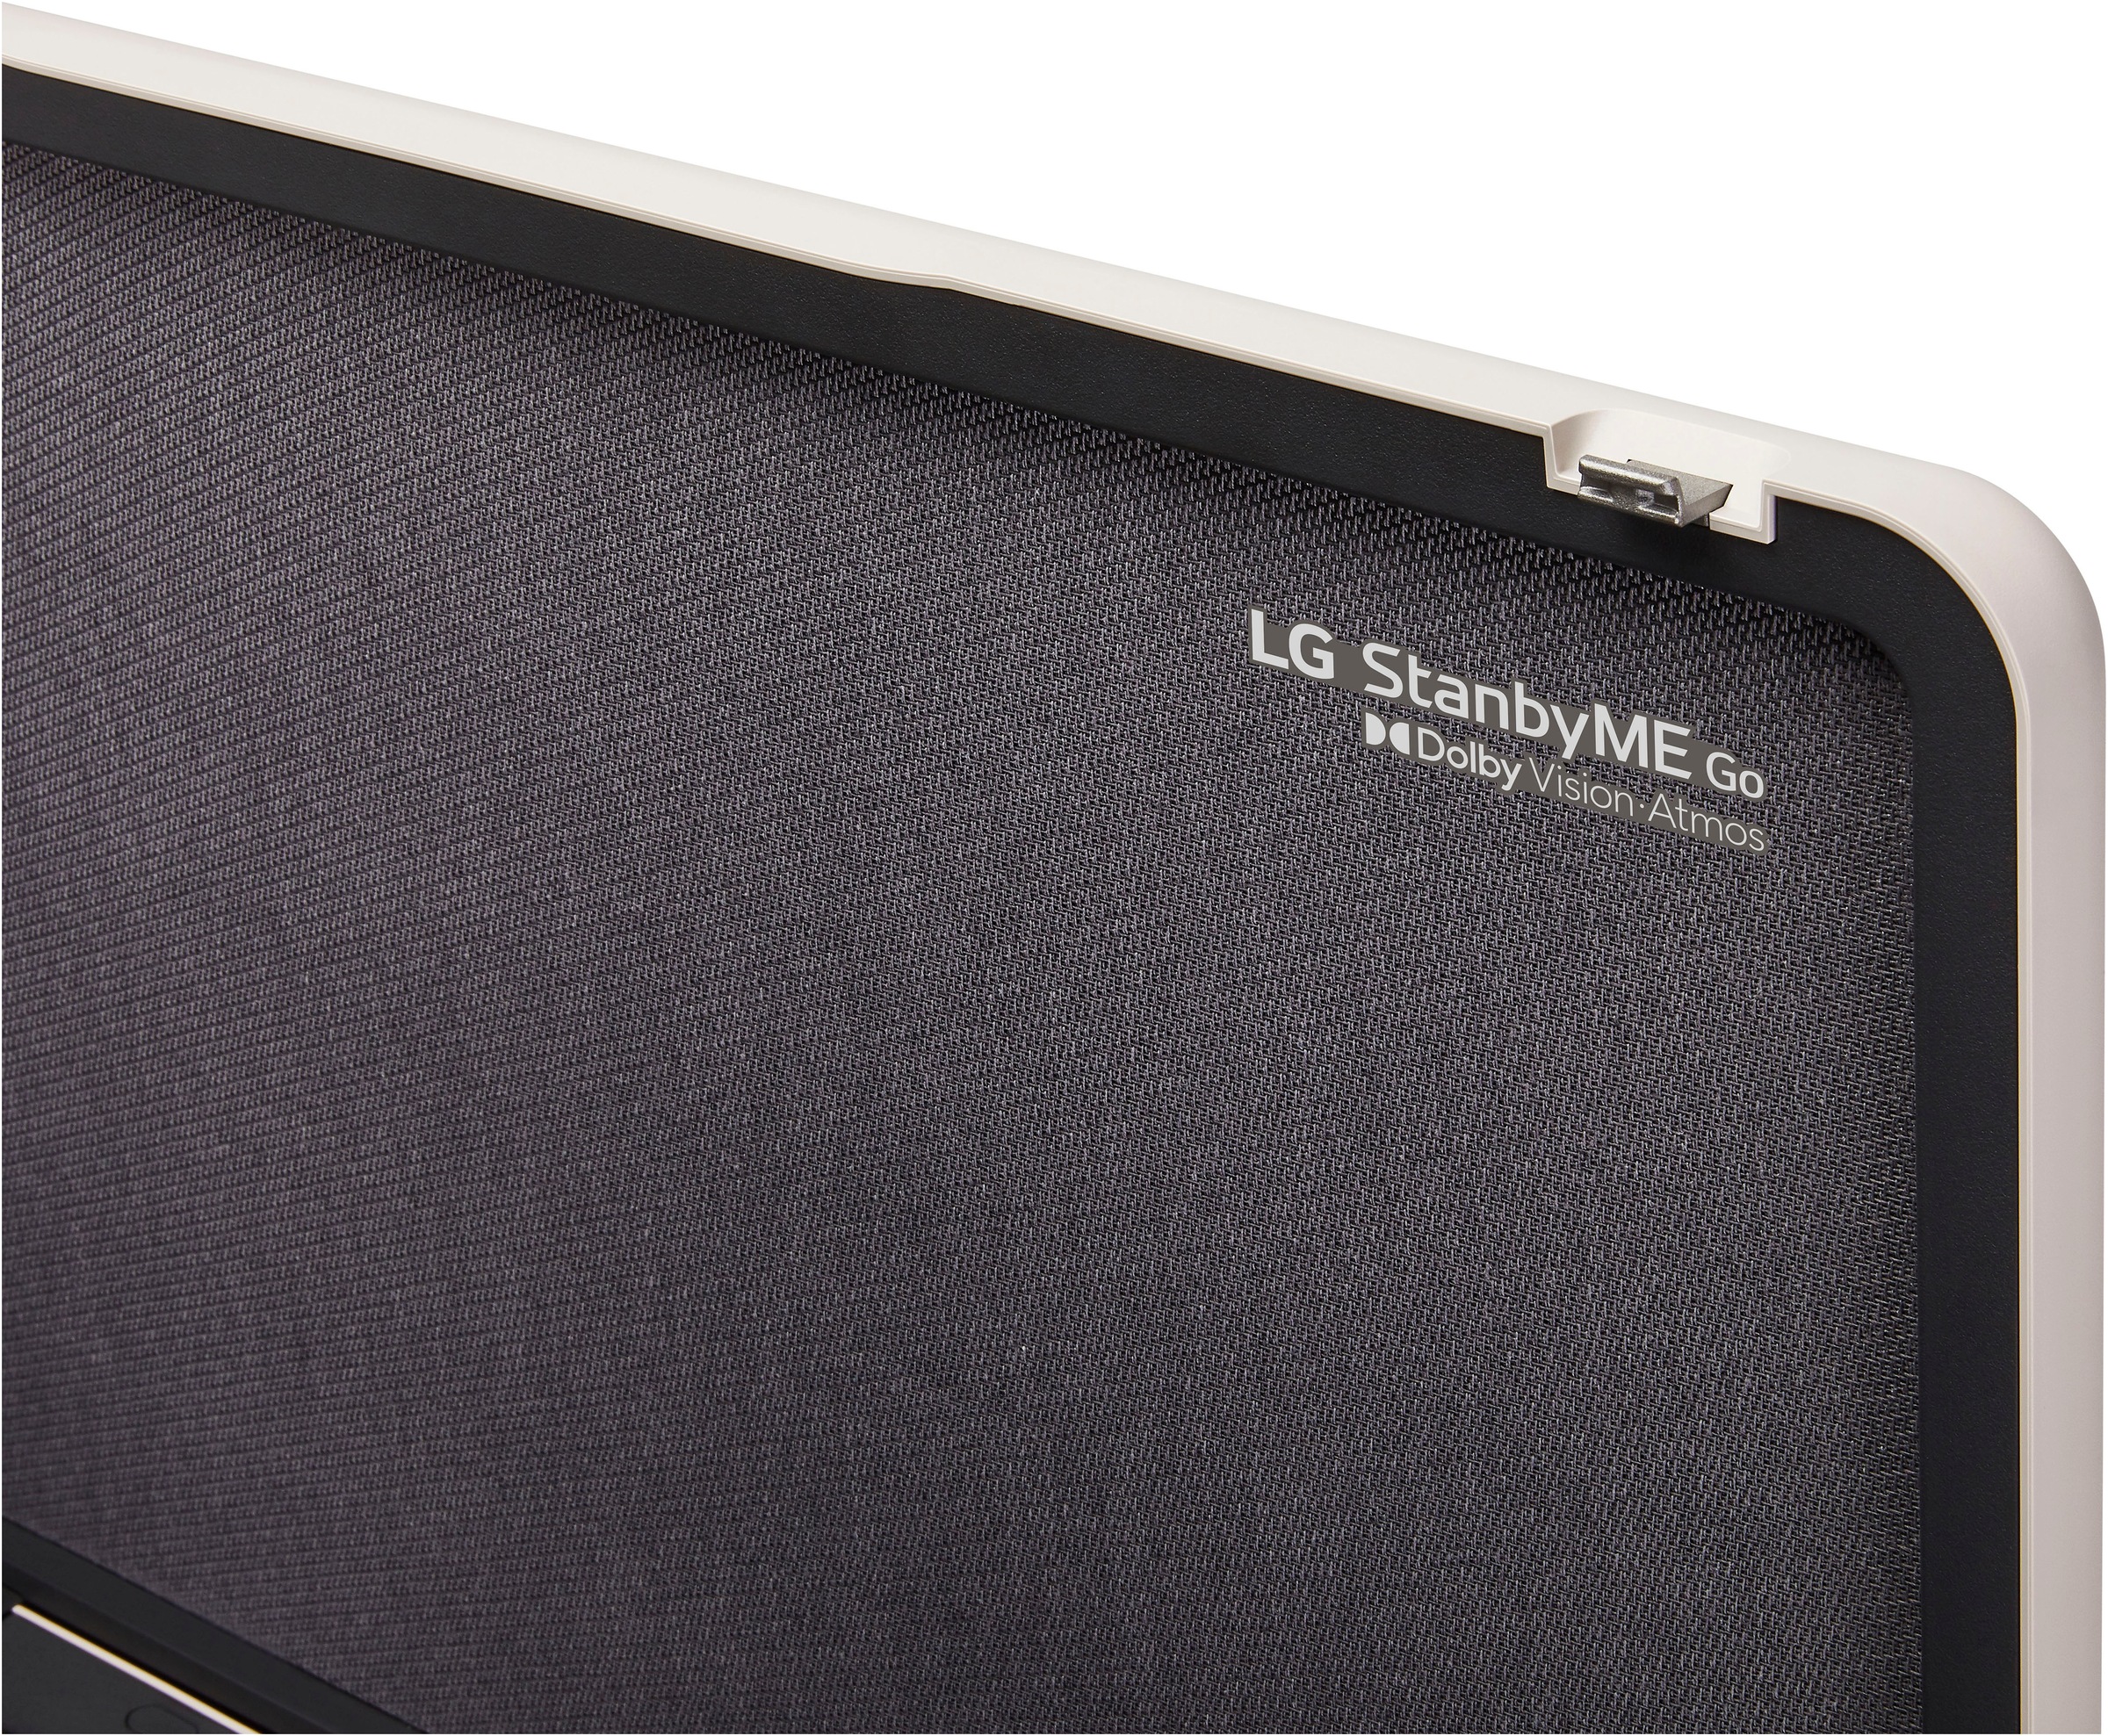 LG LED-Fernseher, 68 cm/27 Zoll, Full HD, Smart-TV